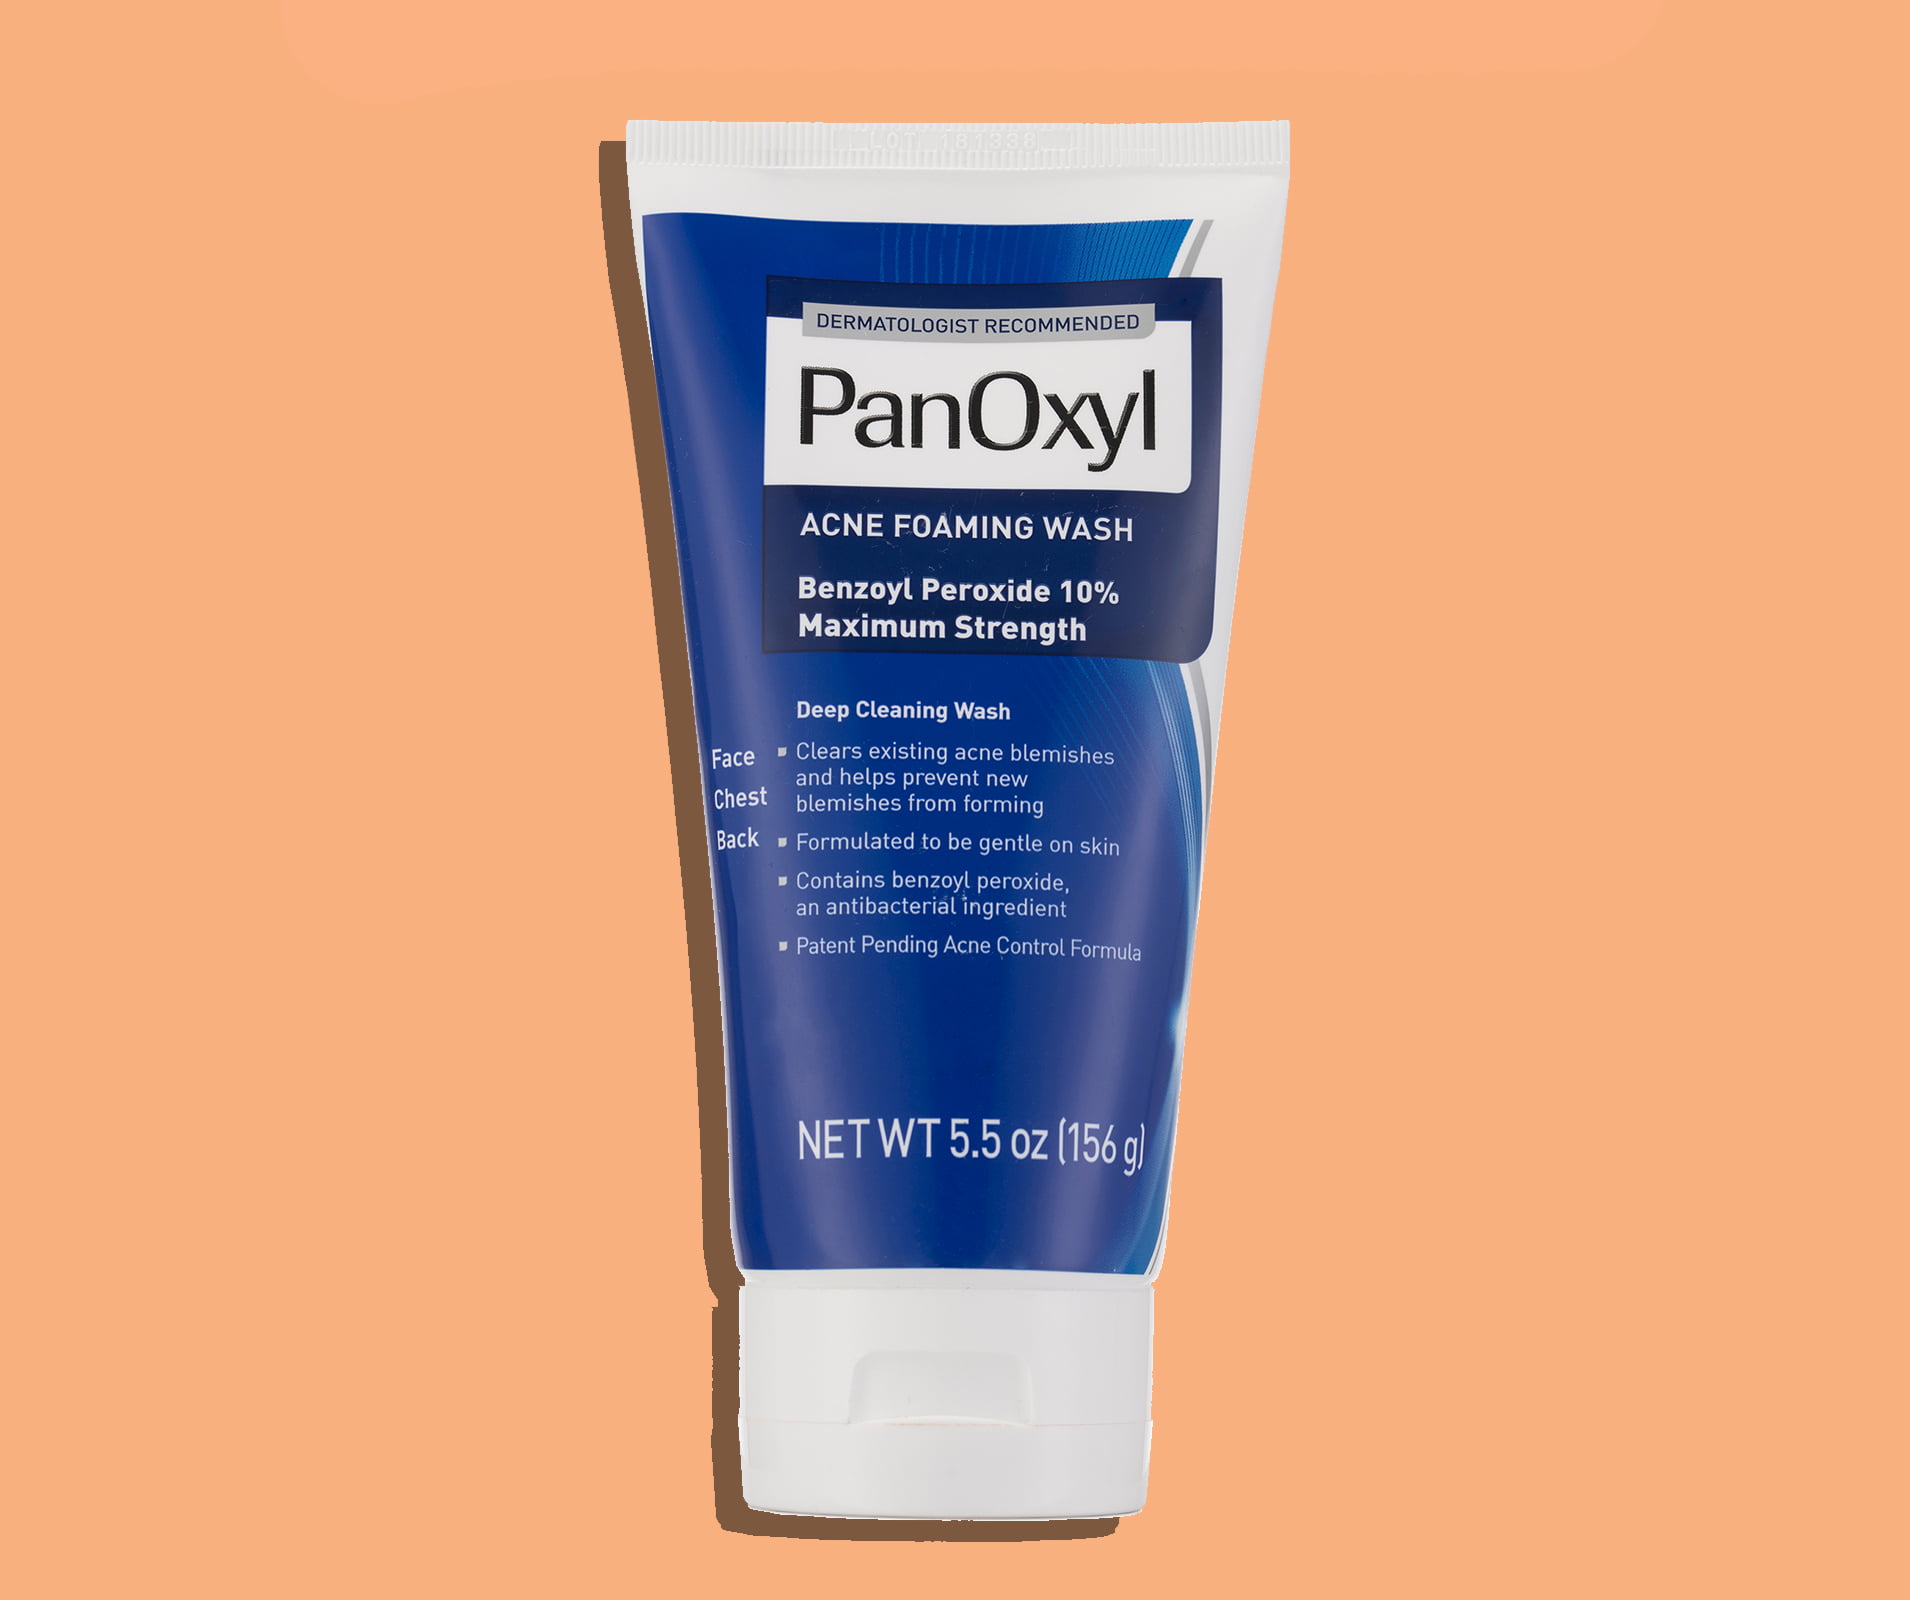 PanOxyl Acne Foaming Wash bottle